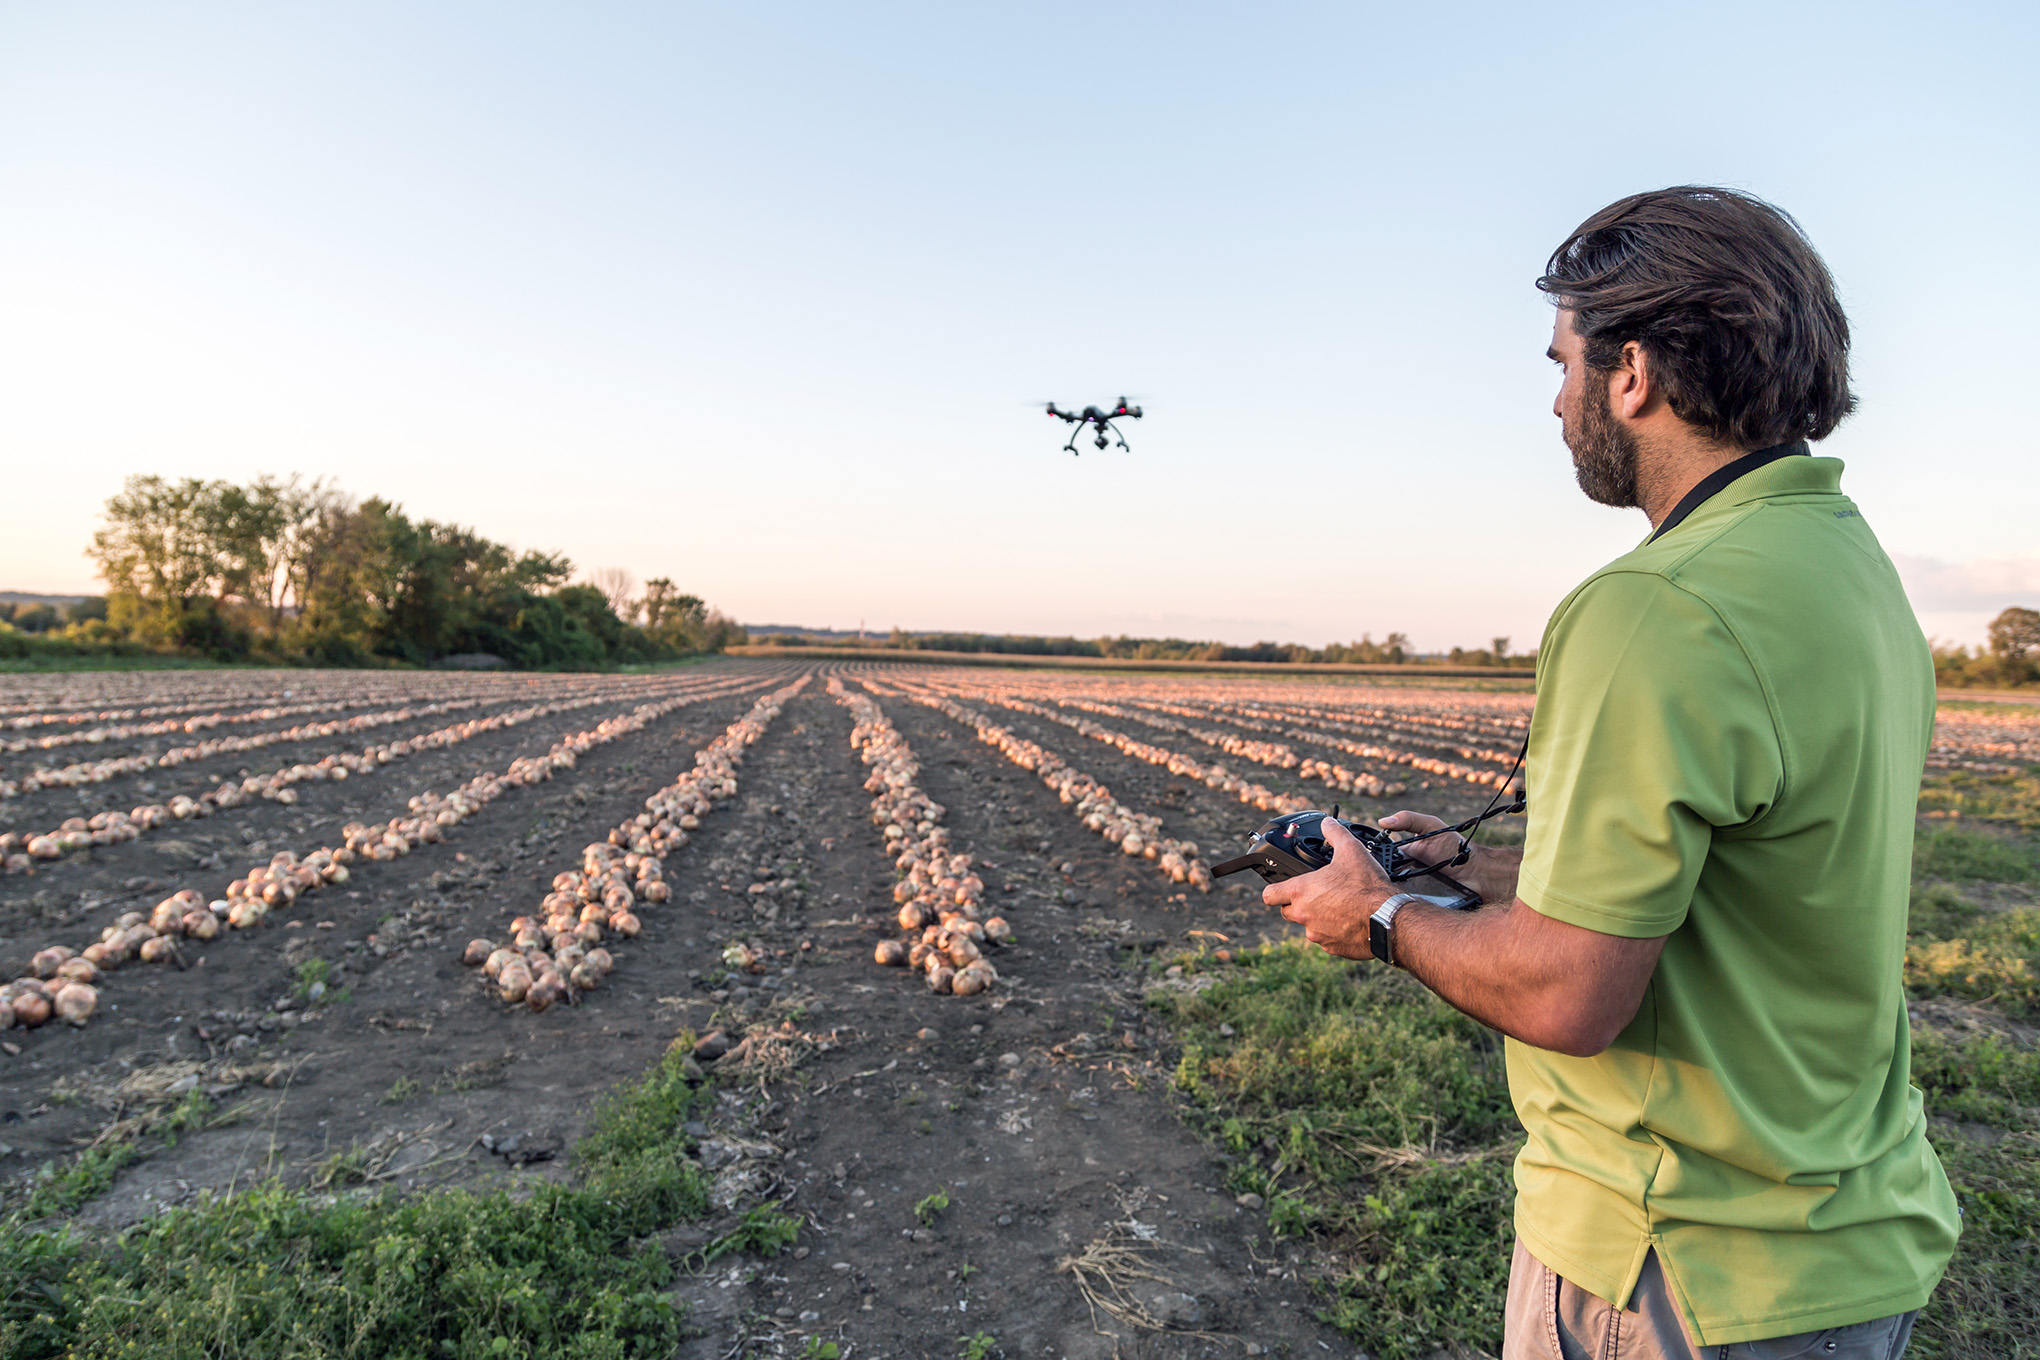 Сельхозбизнес осваивает дроны и интернет вещей. Как высокие технологии меняют рынок?